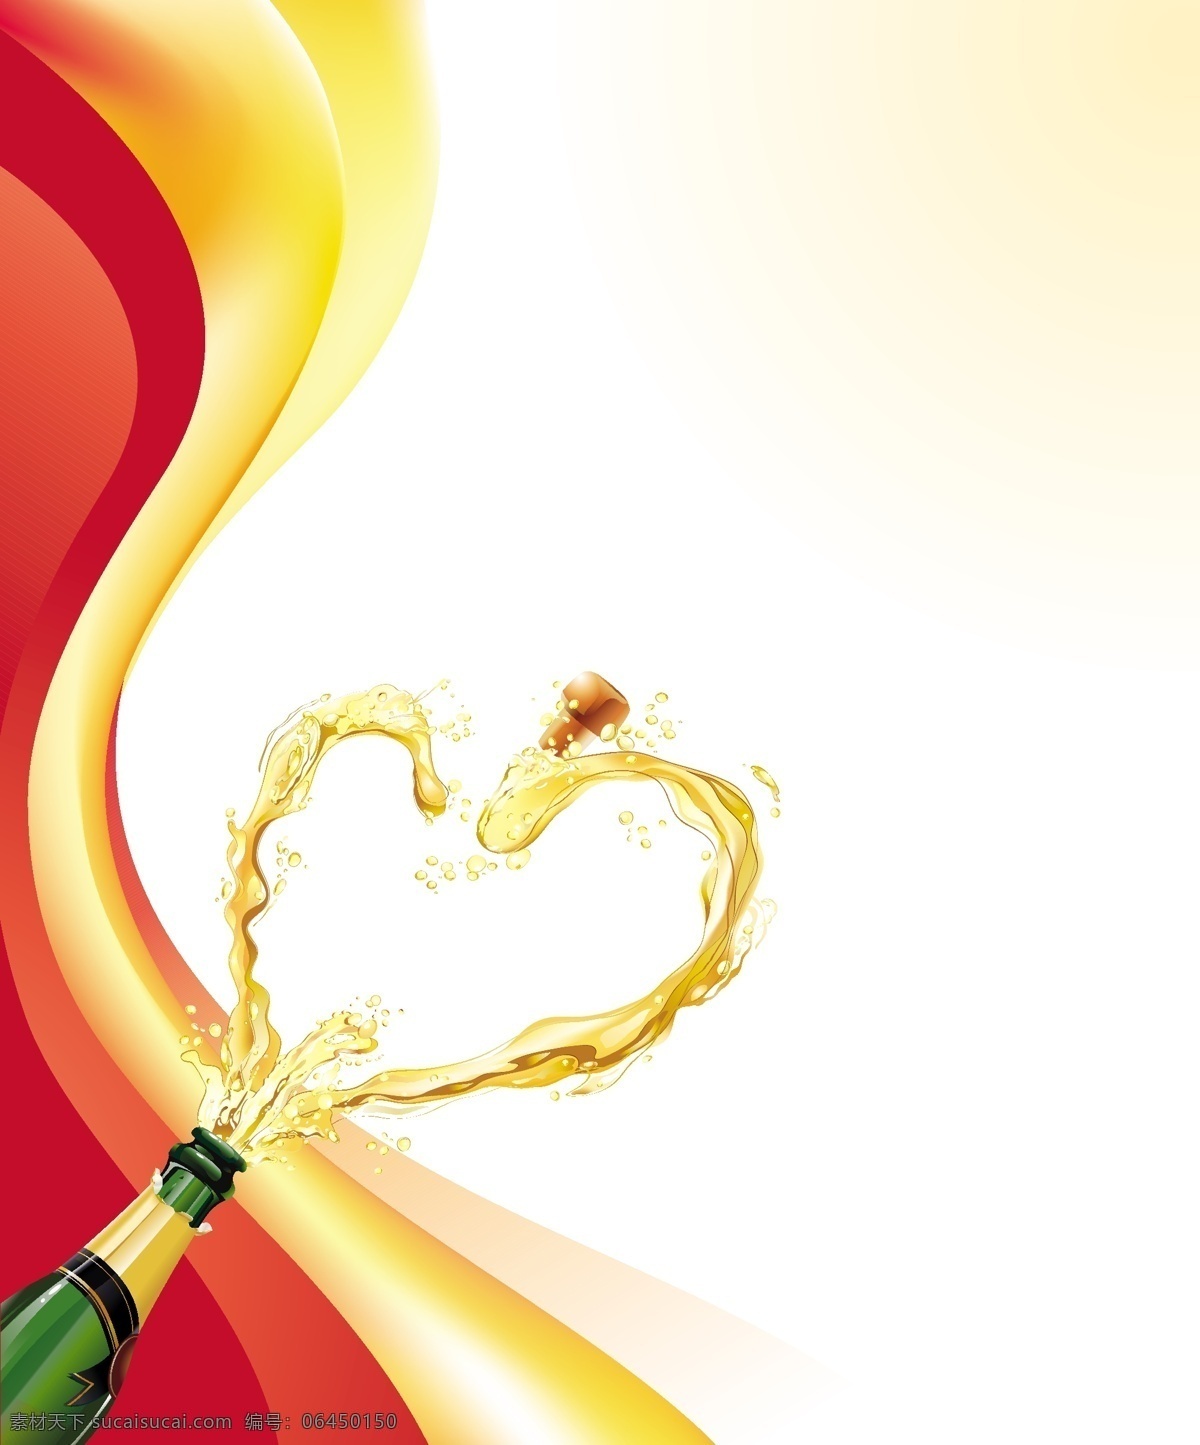 心脏 形 香槟 矢量 动态 心形 香槟酒瓶 飞洒 流量 液体飞溅 矢量图 其他节日